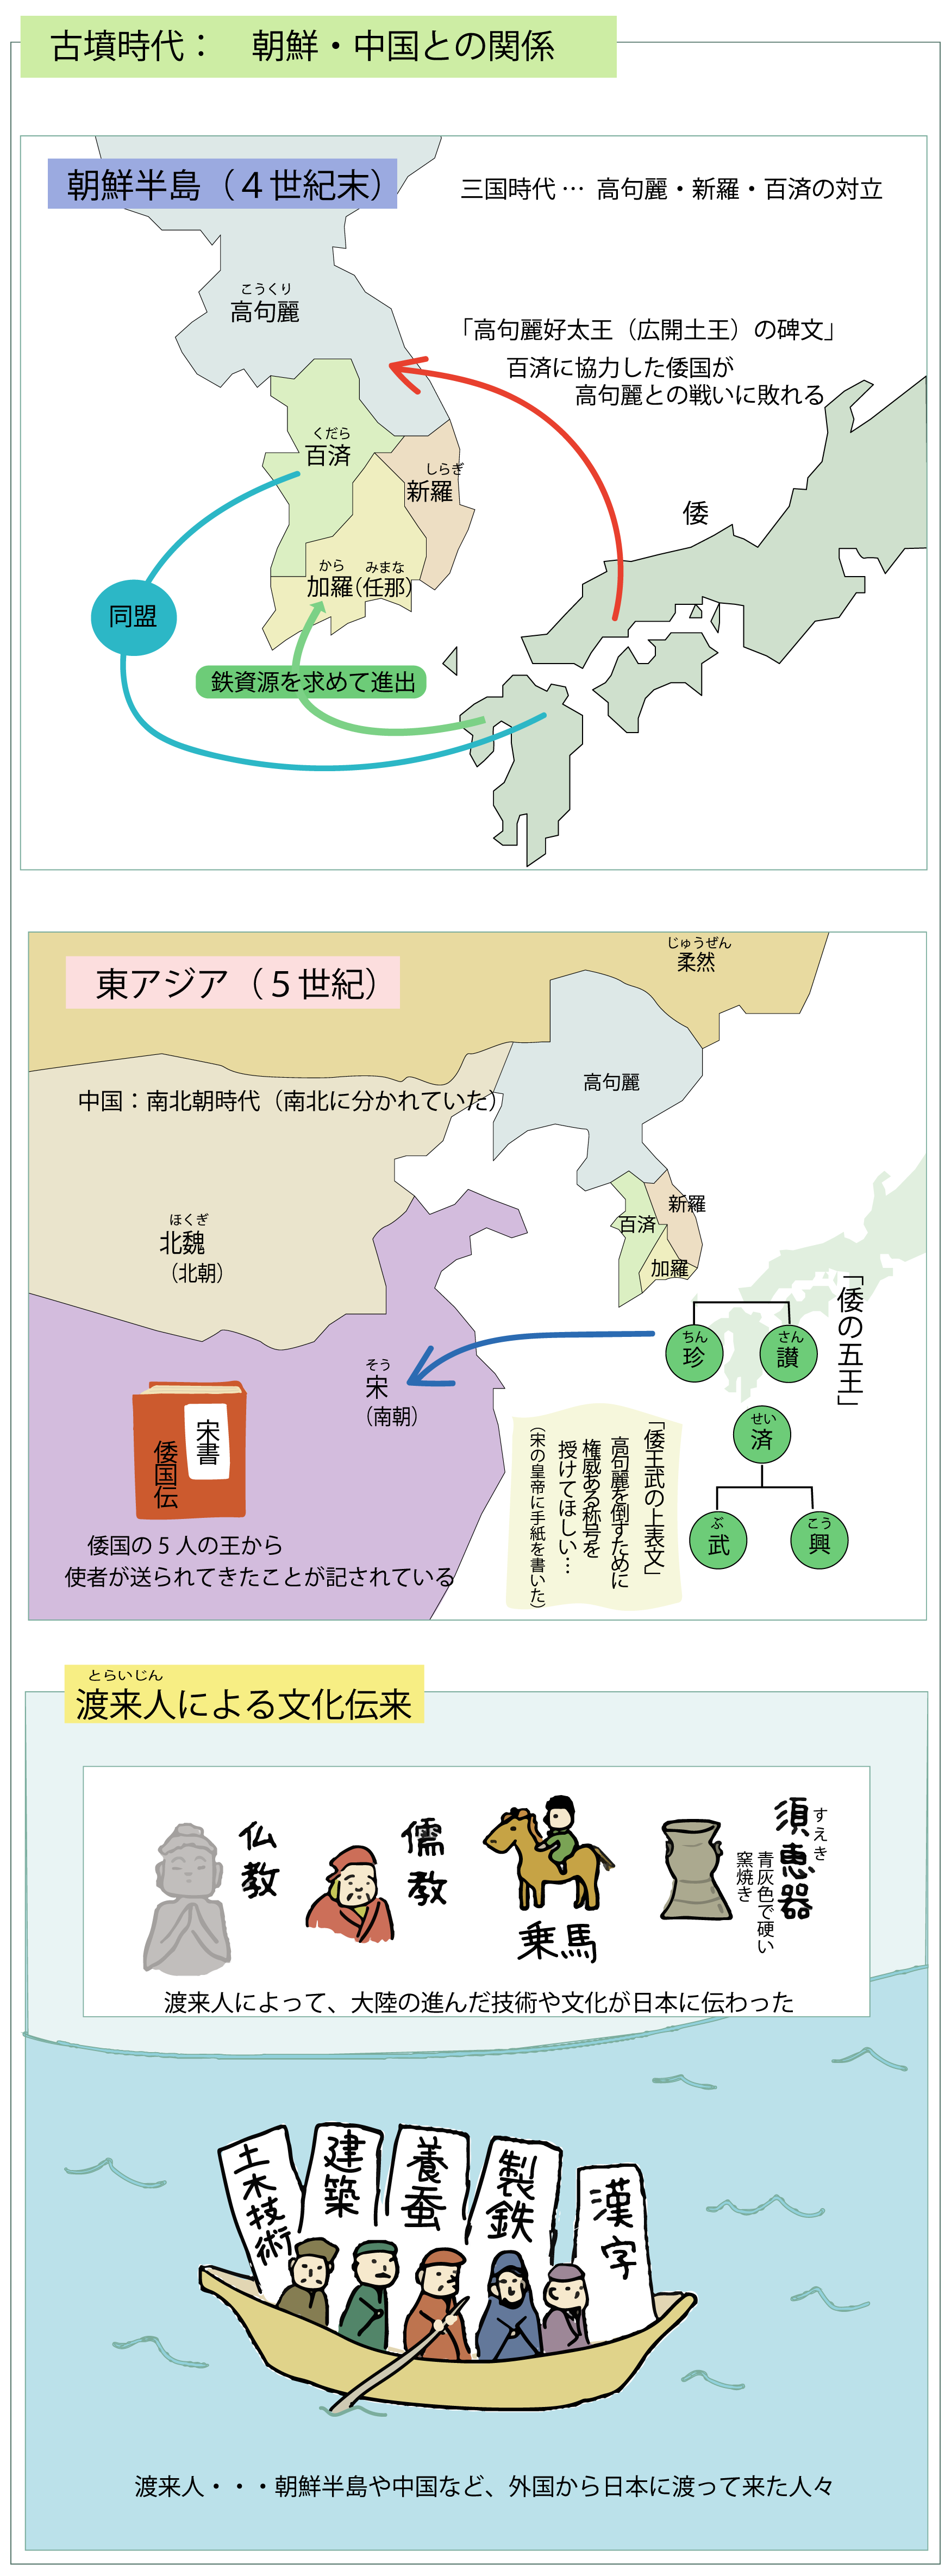 古墳時代 朝鮮・中国との関係をイラストで解説_図解で学ぶ日本史